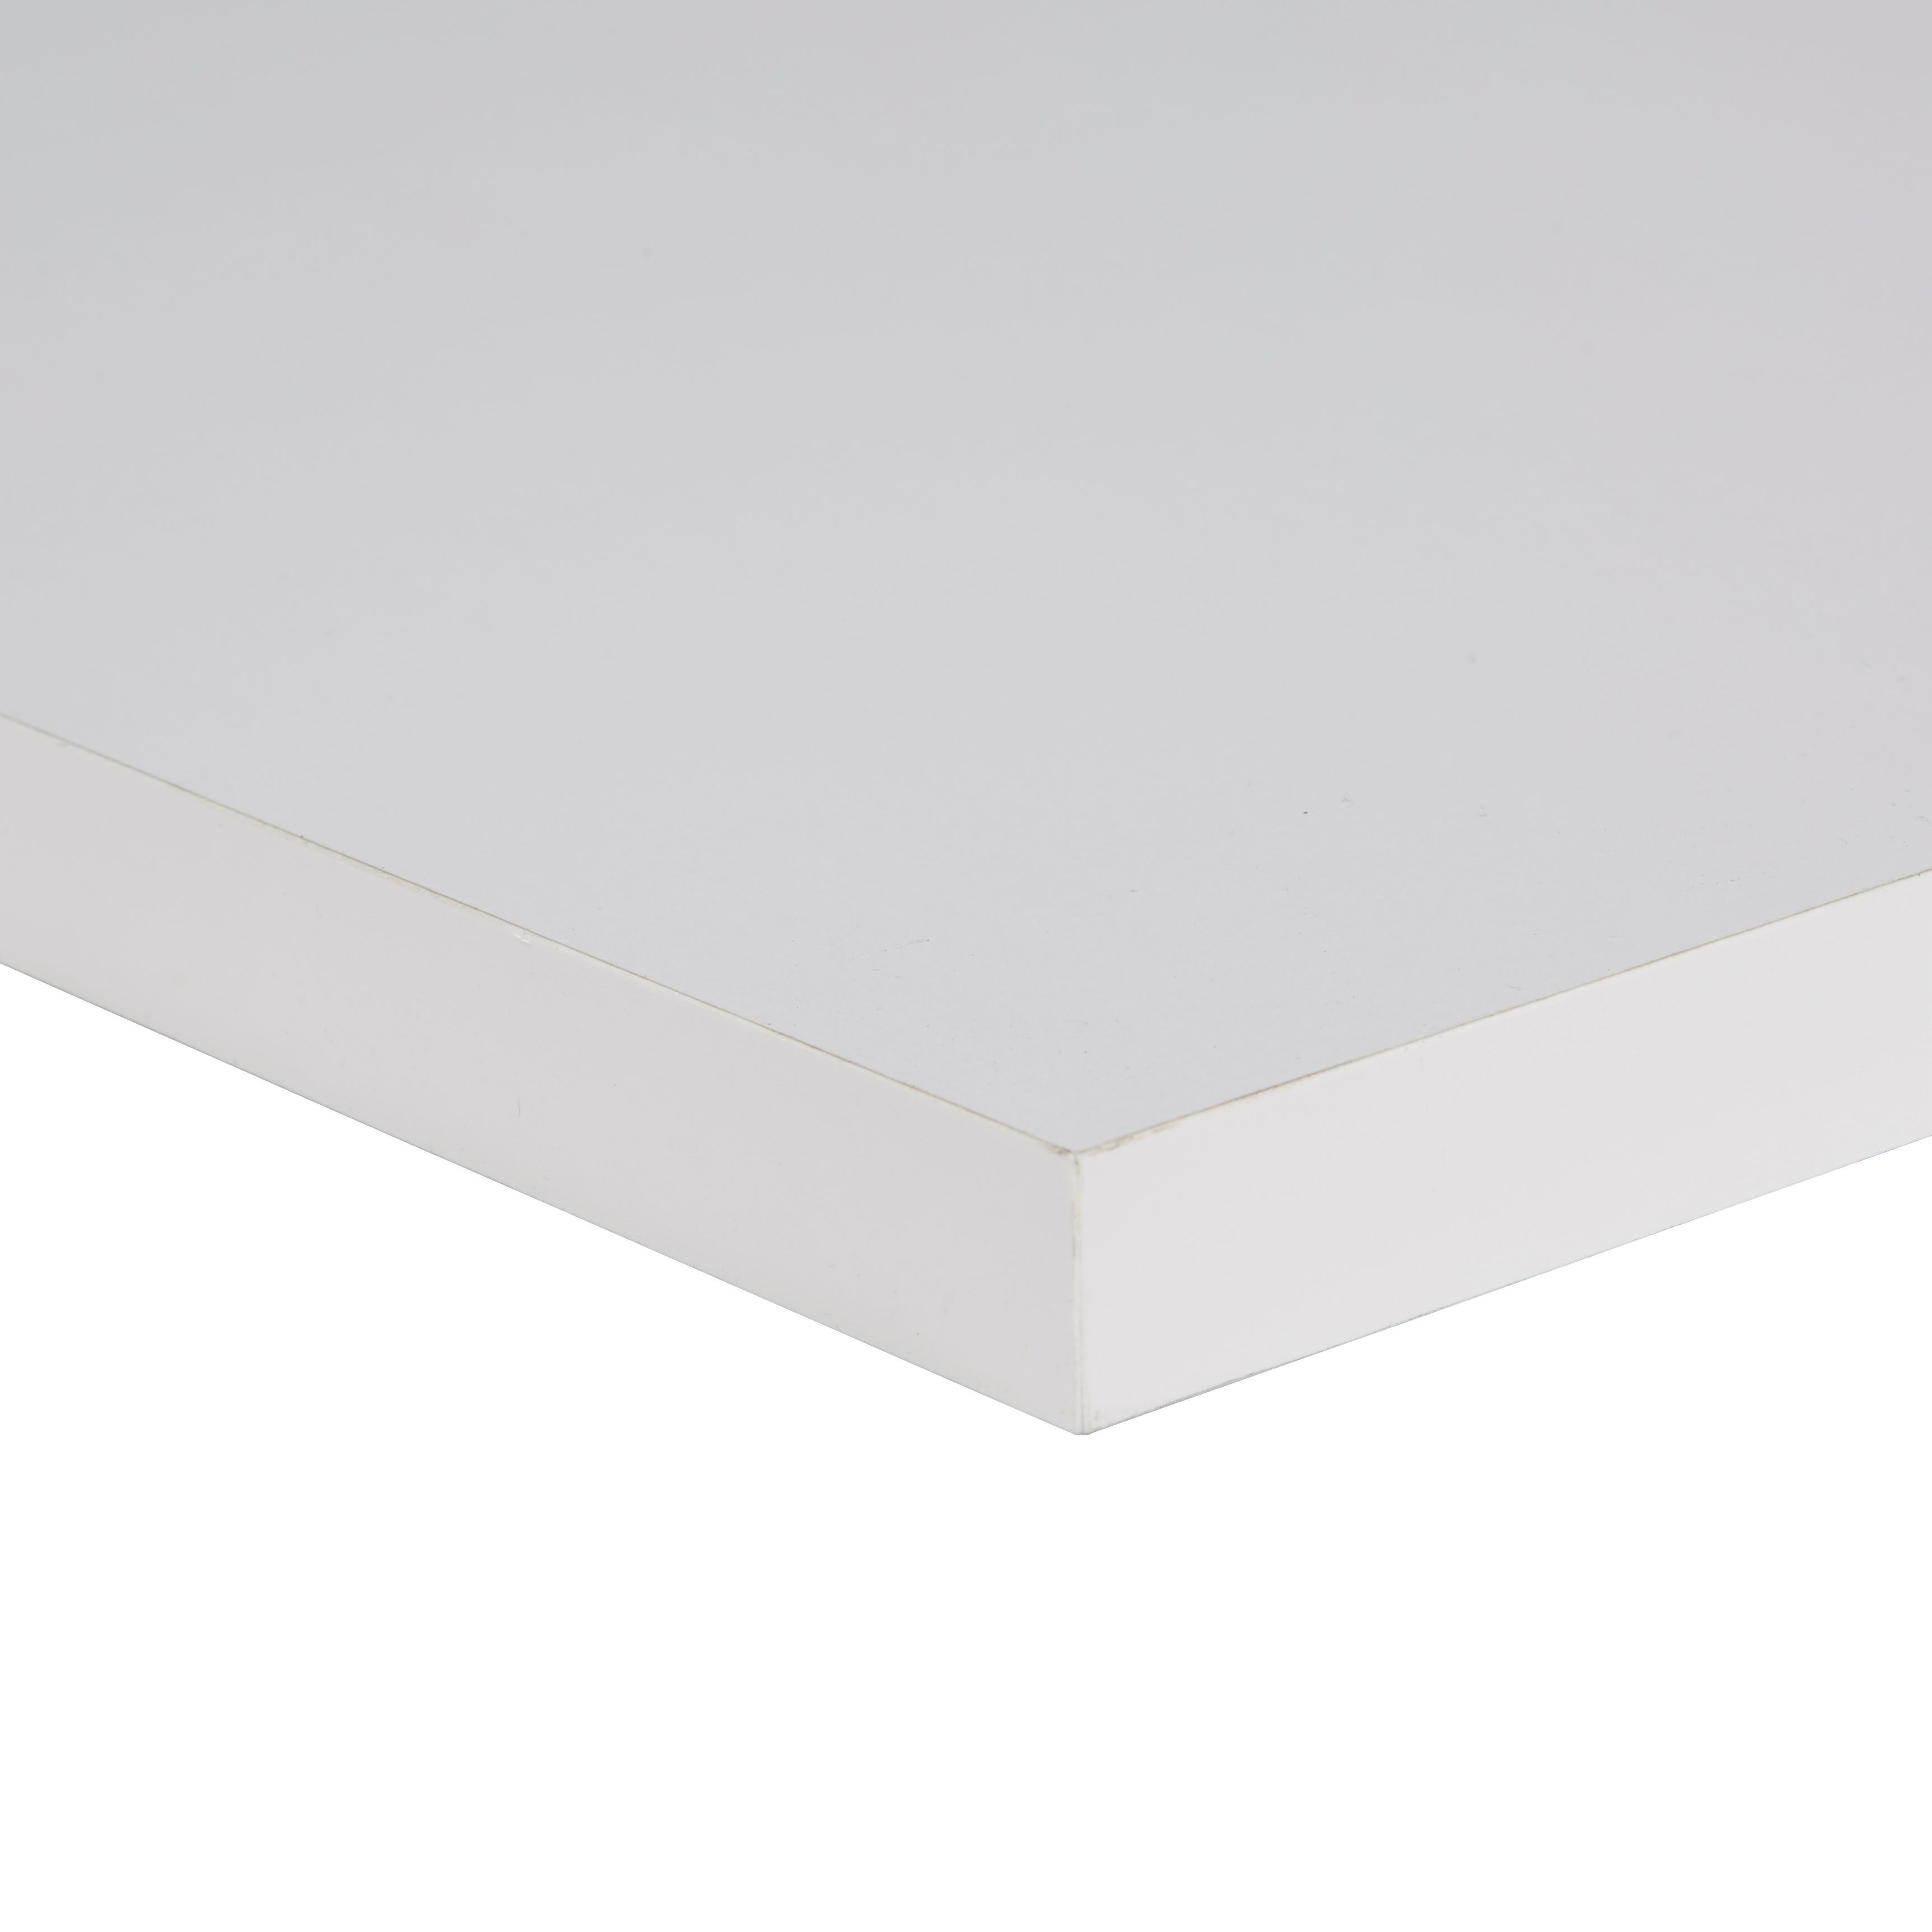 Chipboard Furniture board (L)1200mm (W)300mm (T)18mm | Departments ...